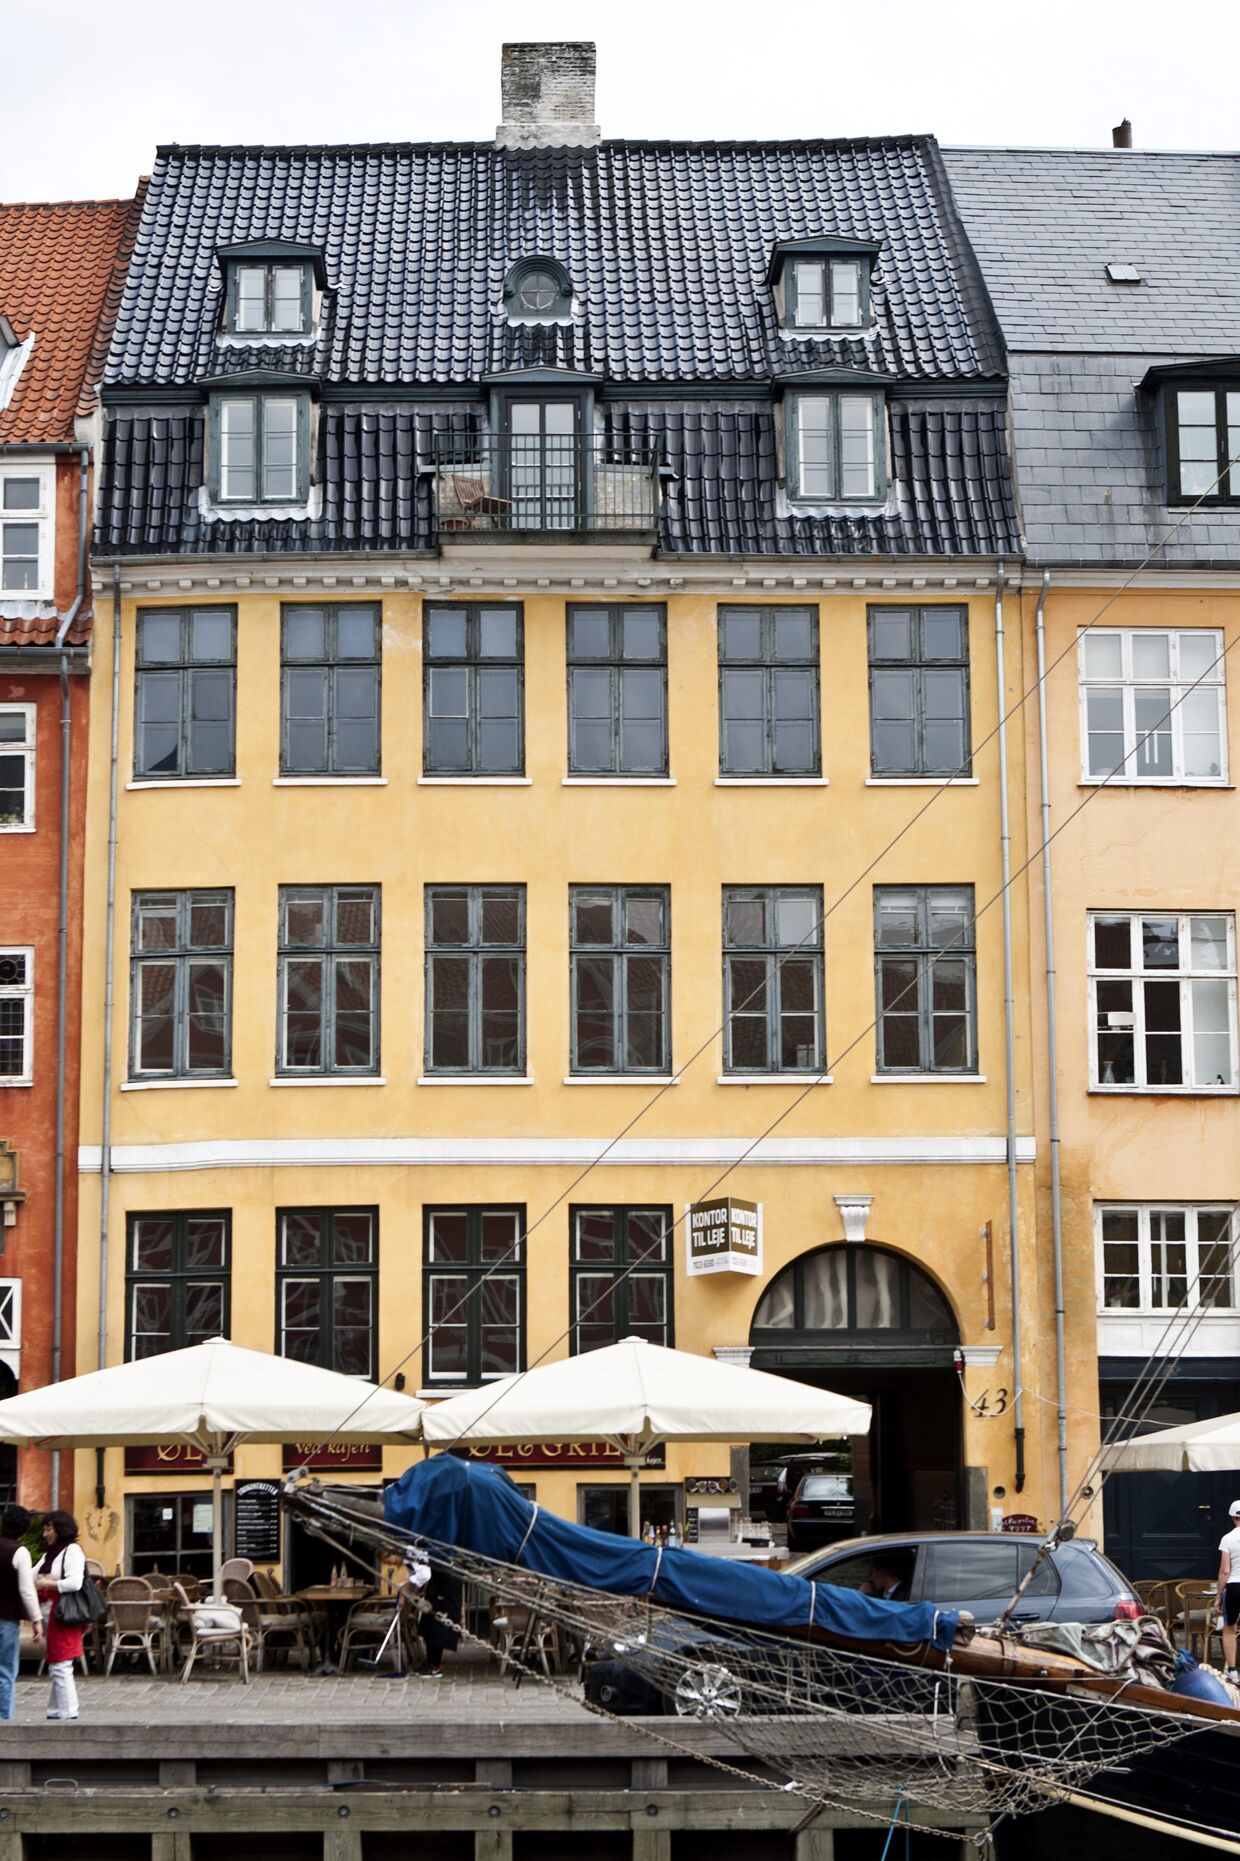 Også Nyhavn 43 er i ejendomsmatadorens portefølje. Som adressen afslører, ligger den i et af Københavns populære turistområder Nyhavn.